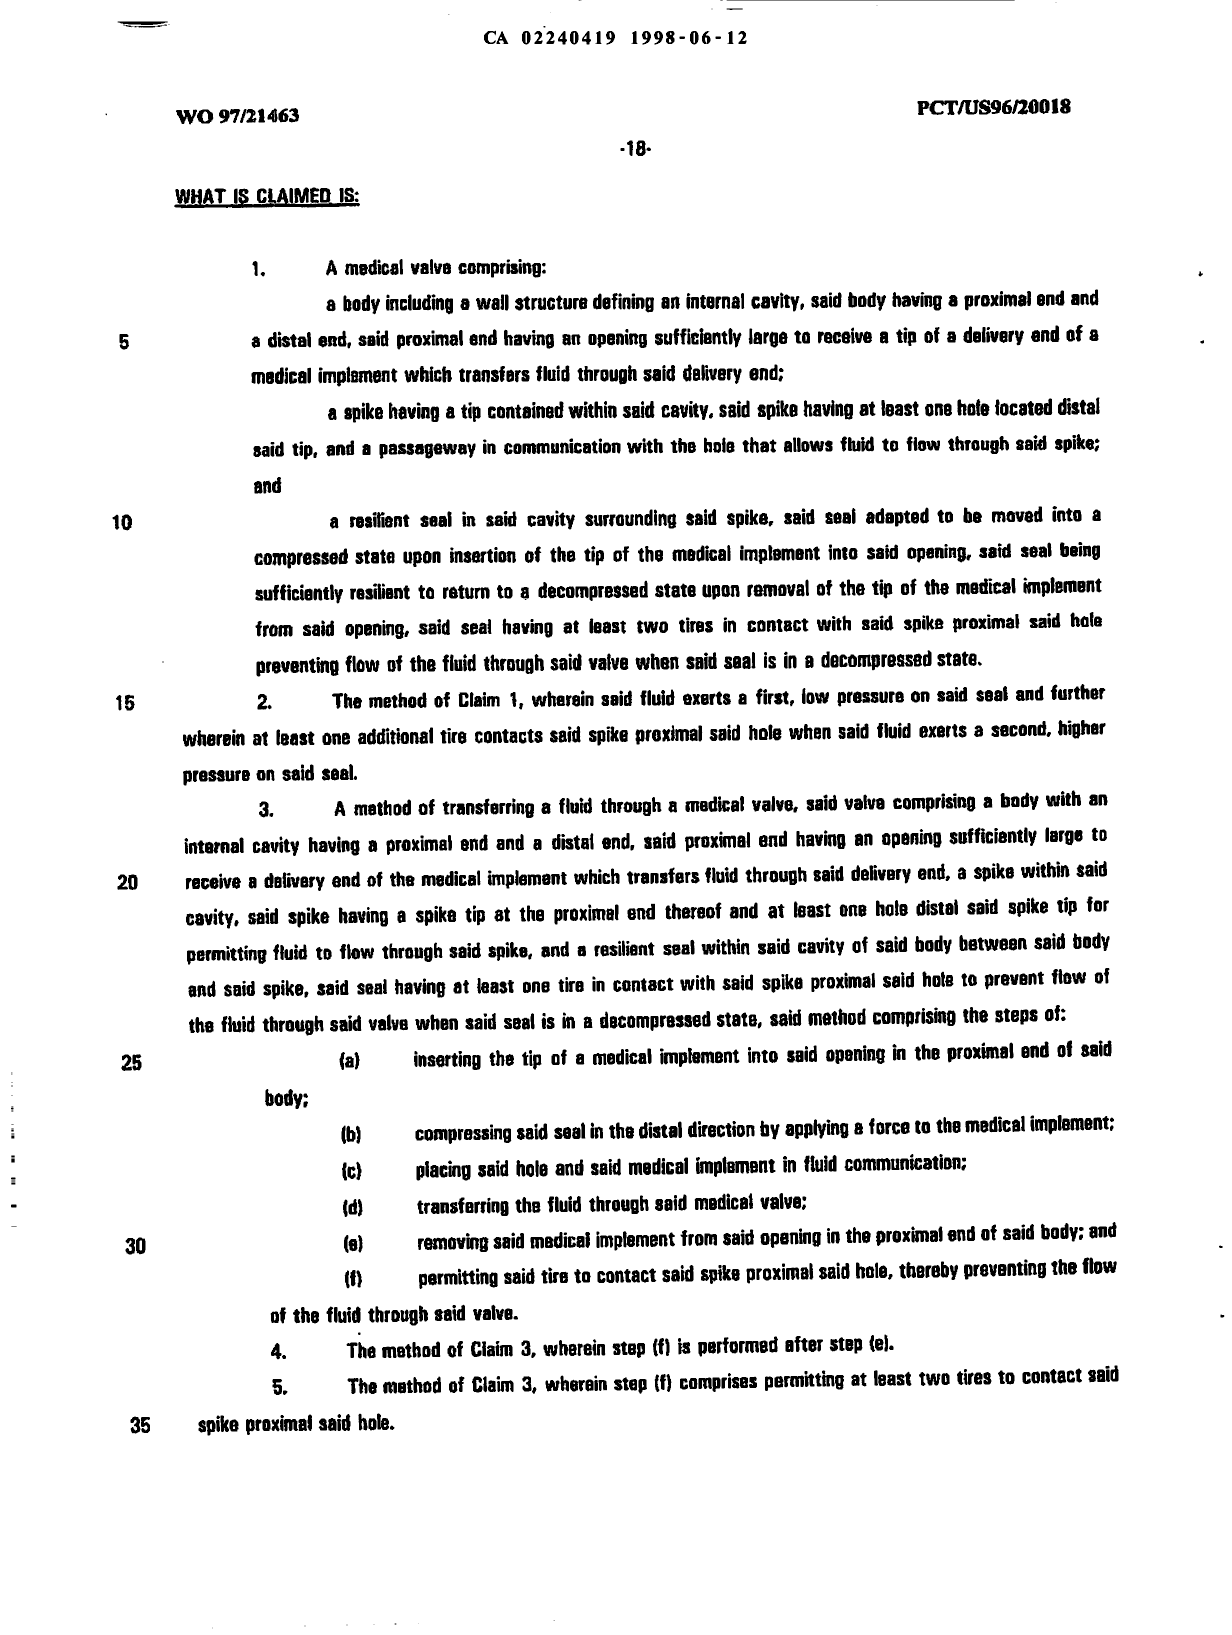 Document de brevet canadien 2240419. Revendications 19980612. Image 1 de 2